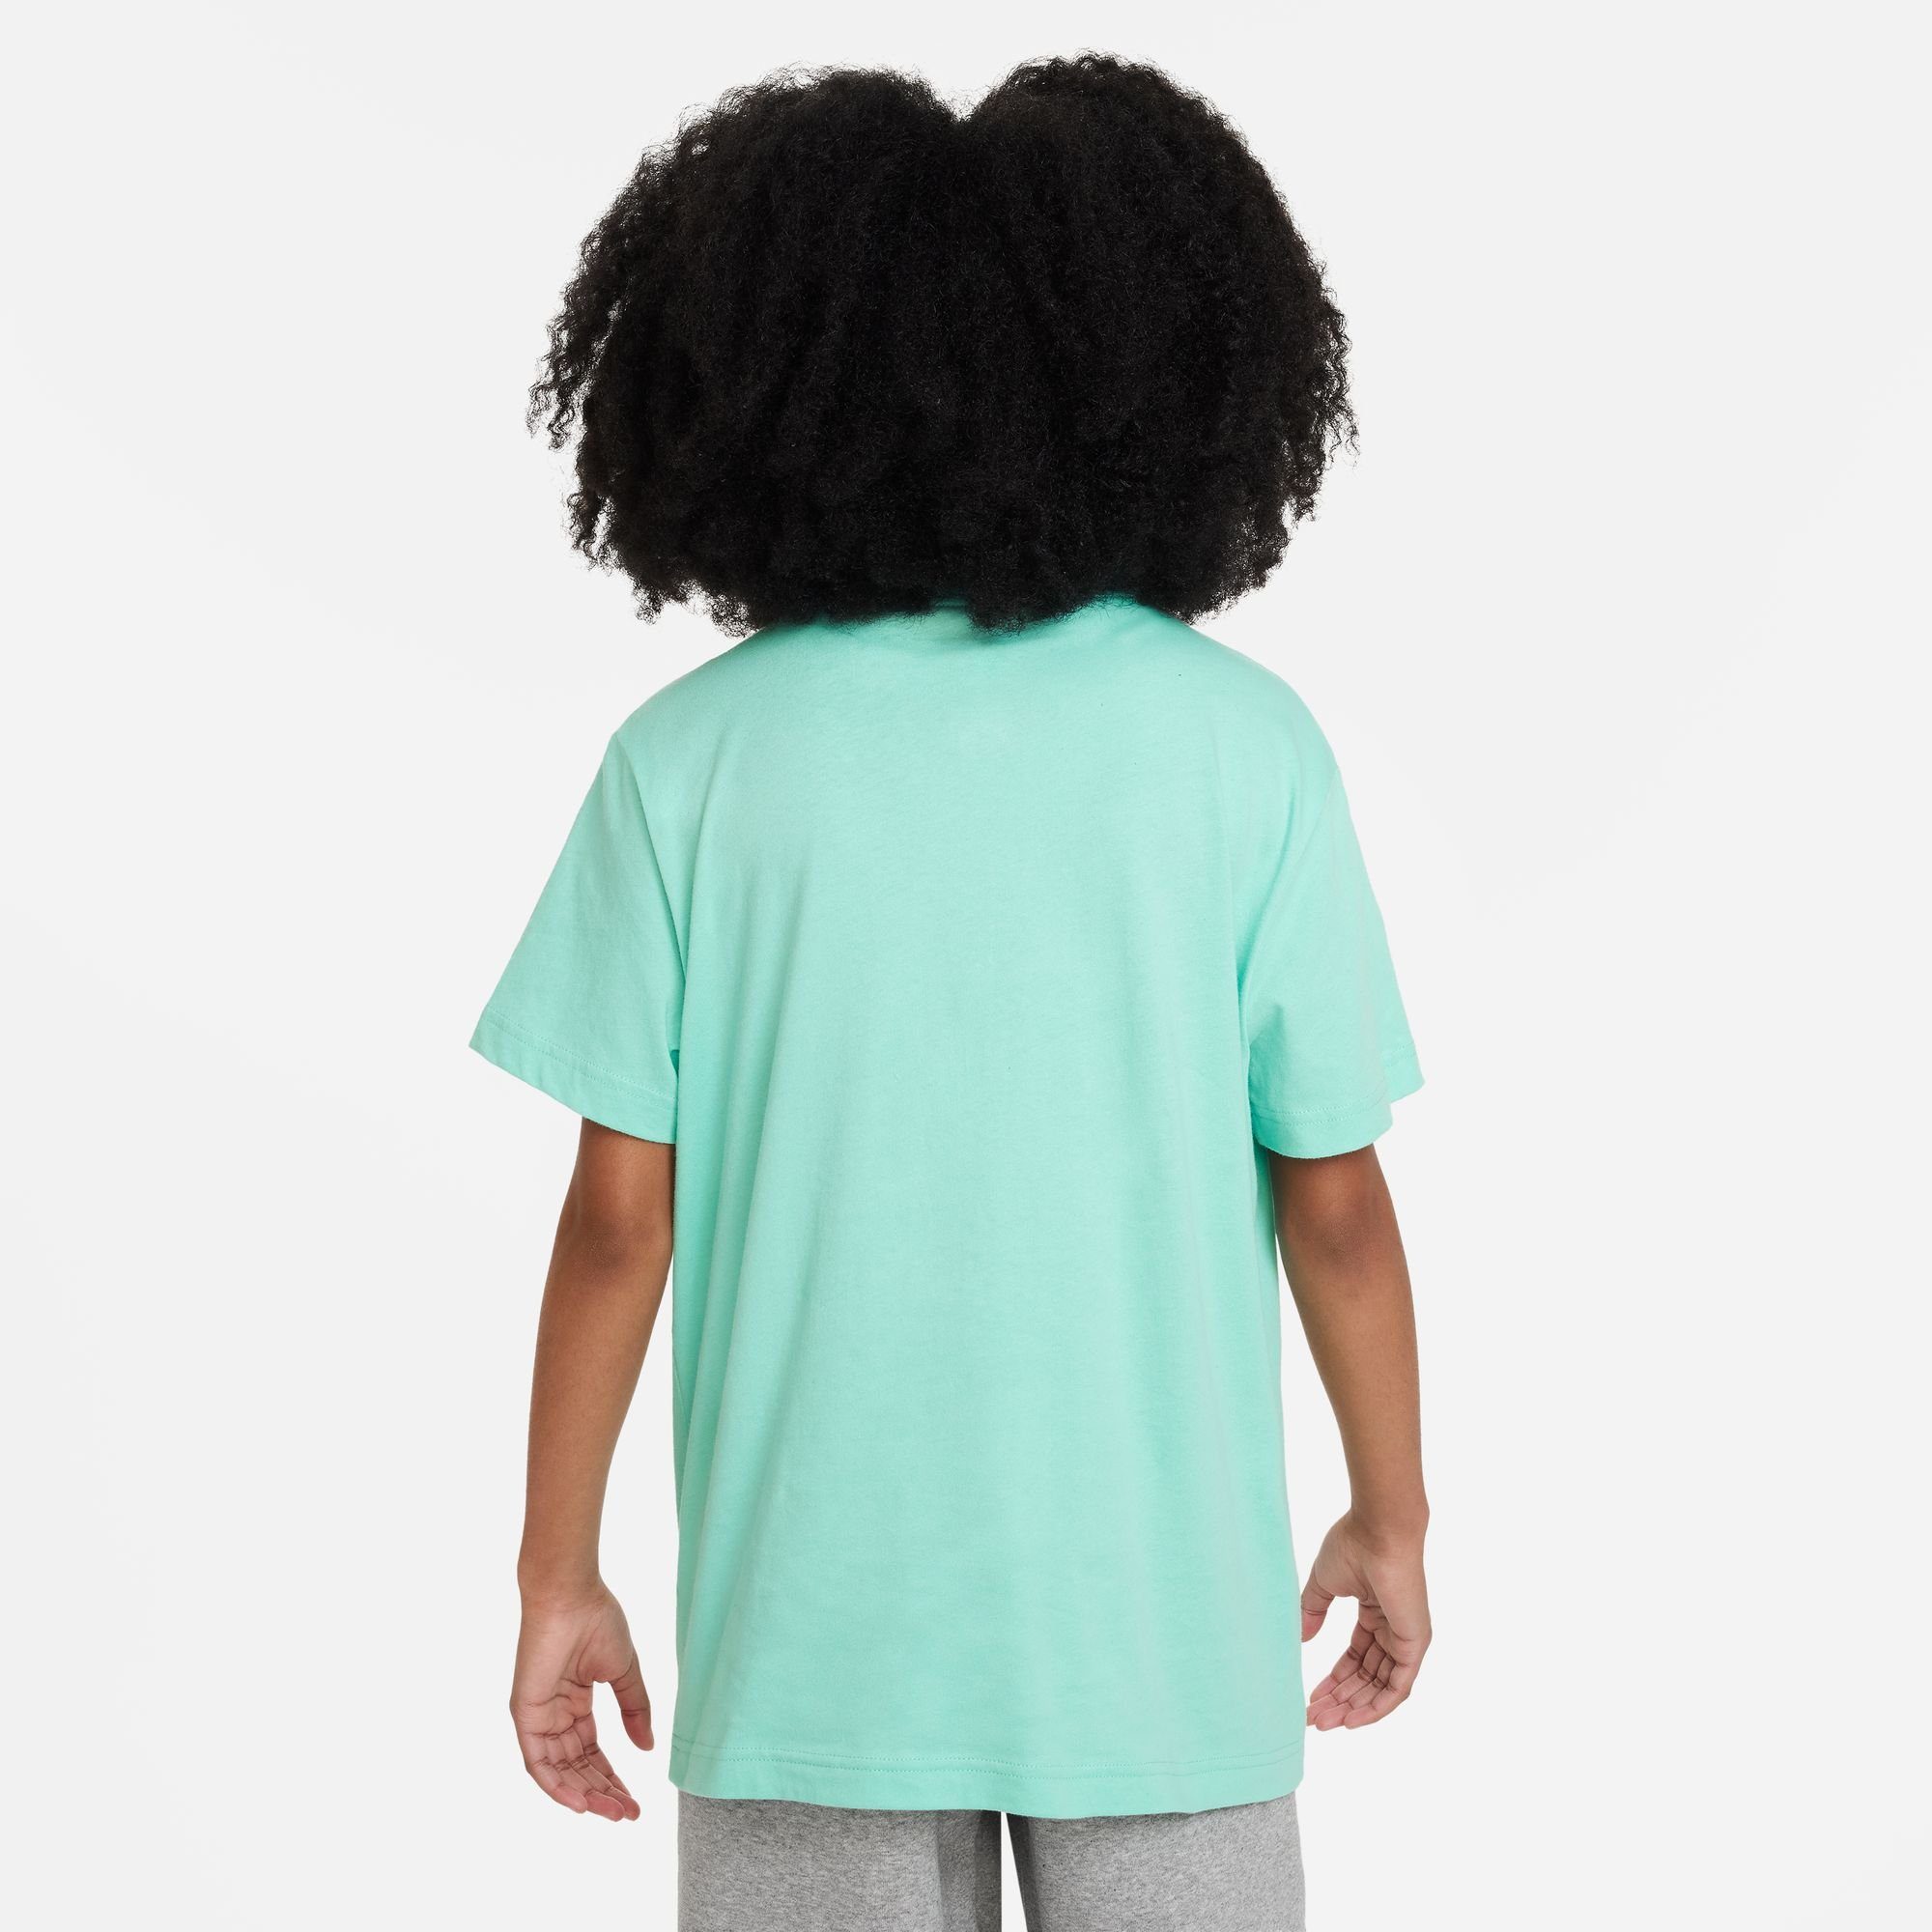 KIDS' RISE T-SHIRT EMERALD BIG Sportswear T-Shirt (GIRLS) Nike